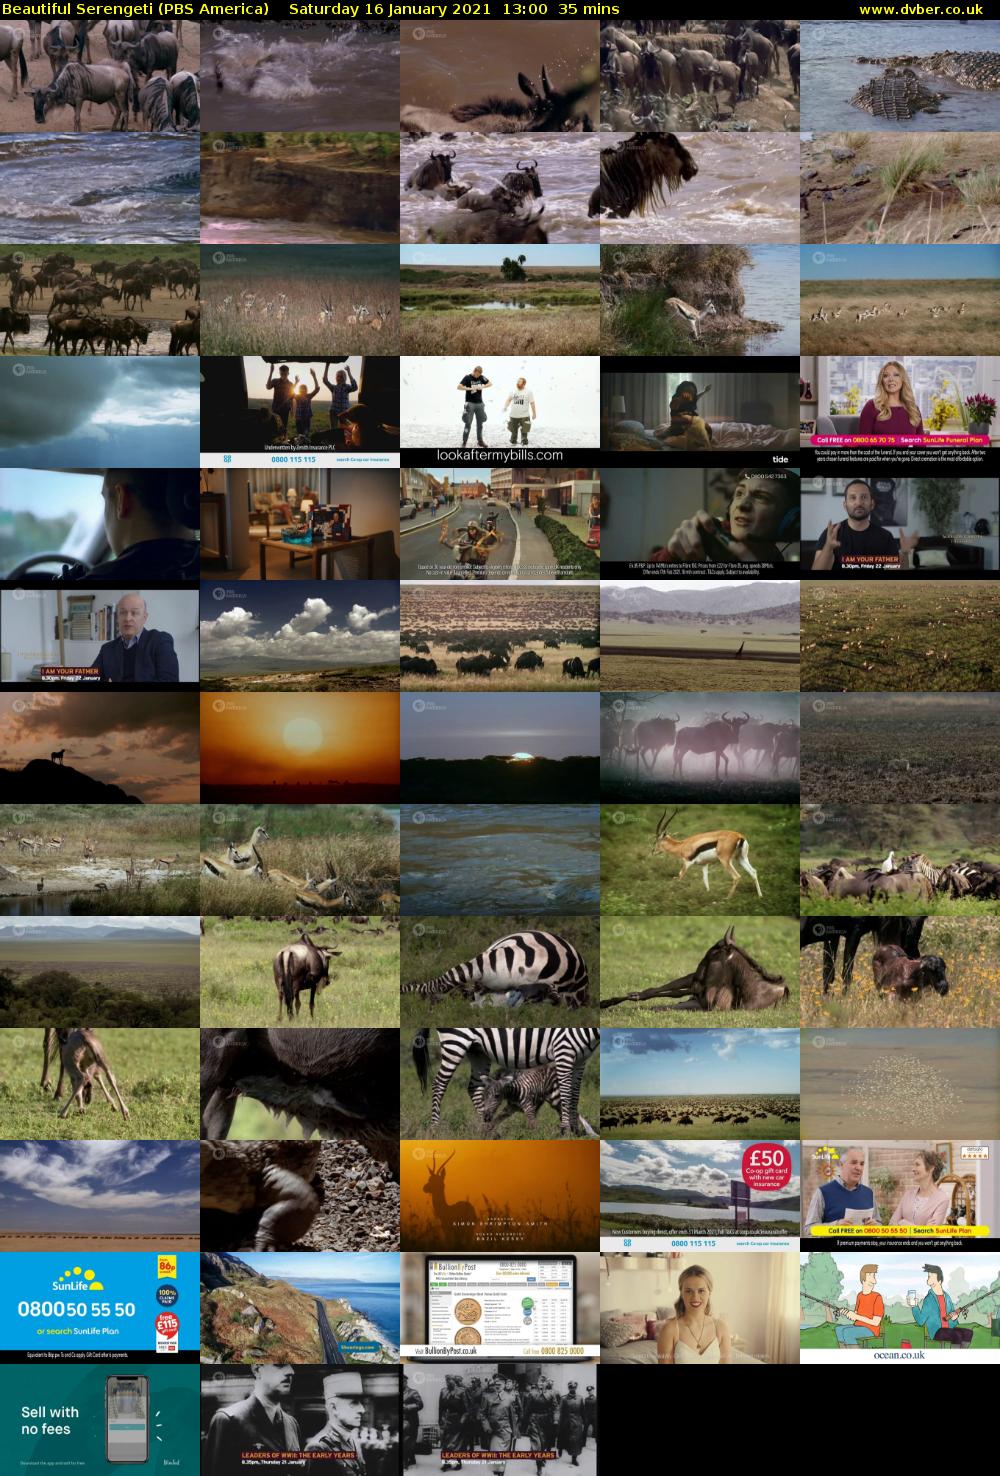 Beautiful Serengeti (PBS America) Saturday 16 January 2021 13:00 - 13:35